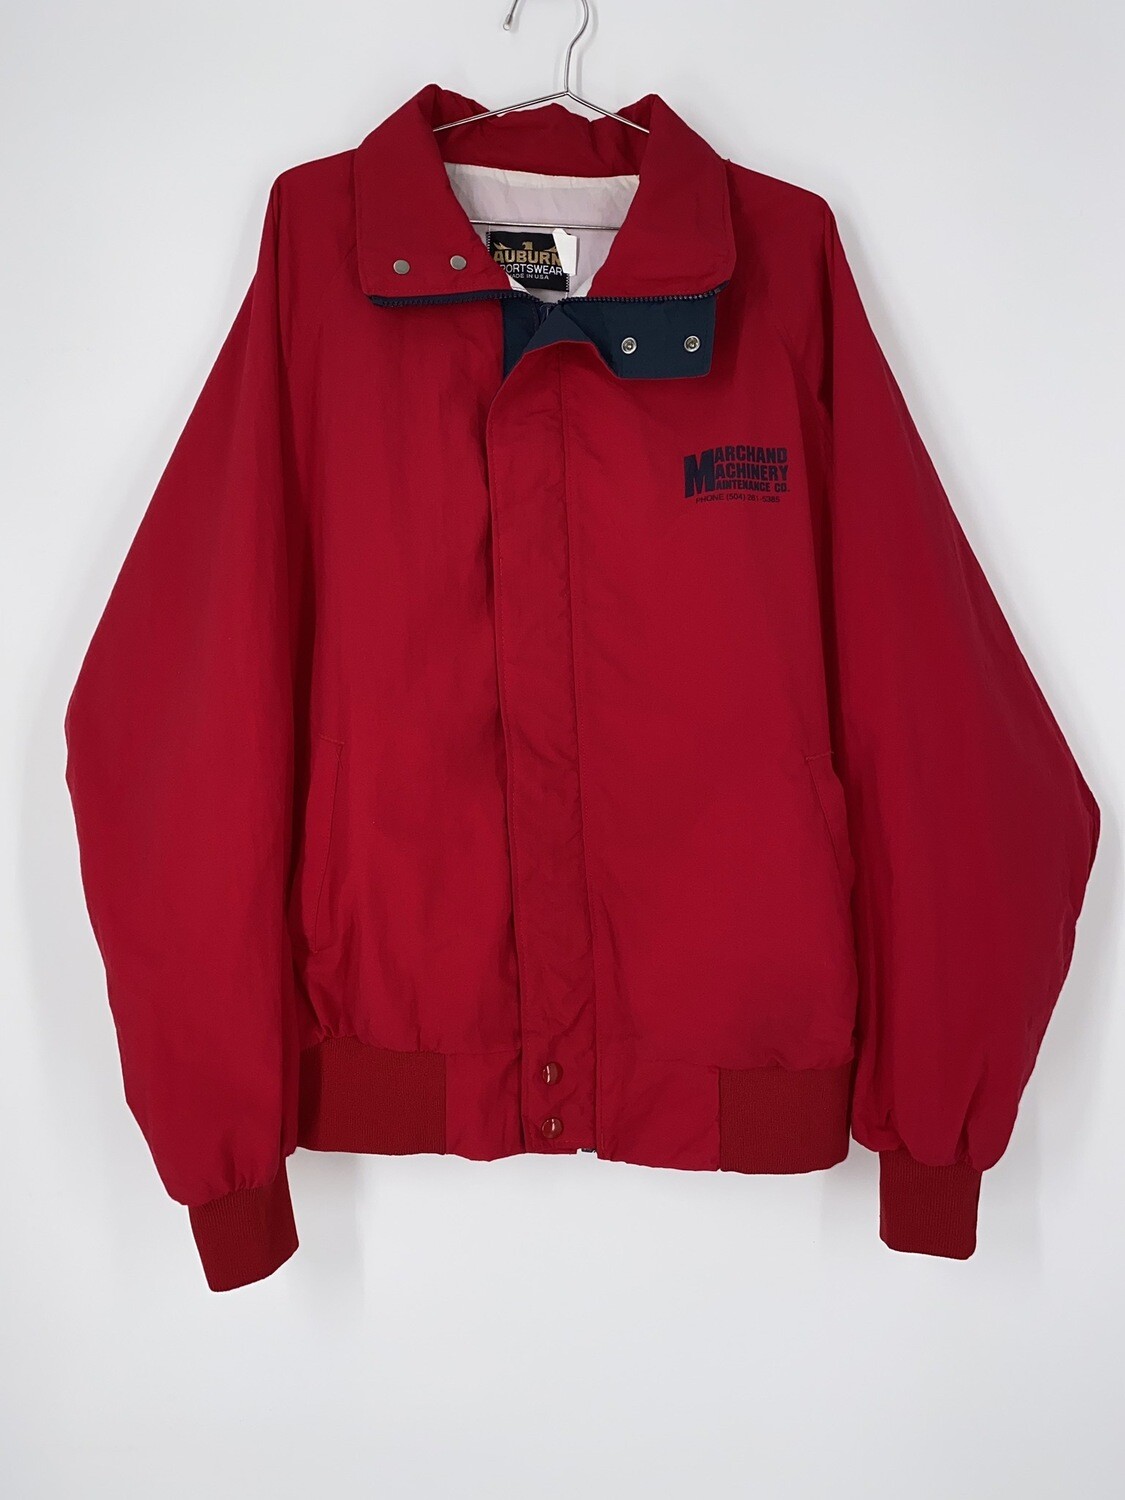 Auburn Sportswear Zip Up Bomber Jacket Size L